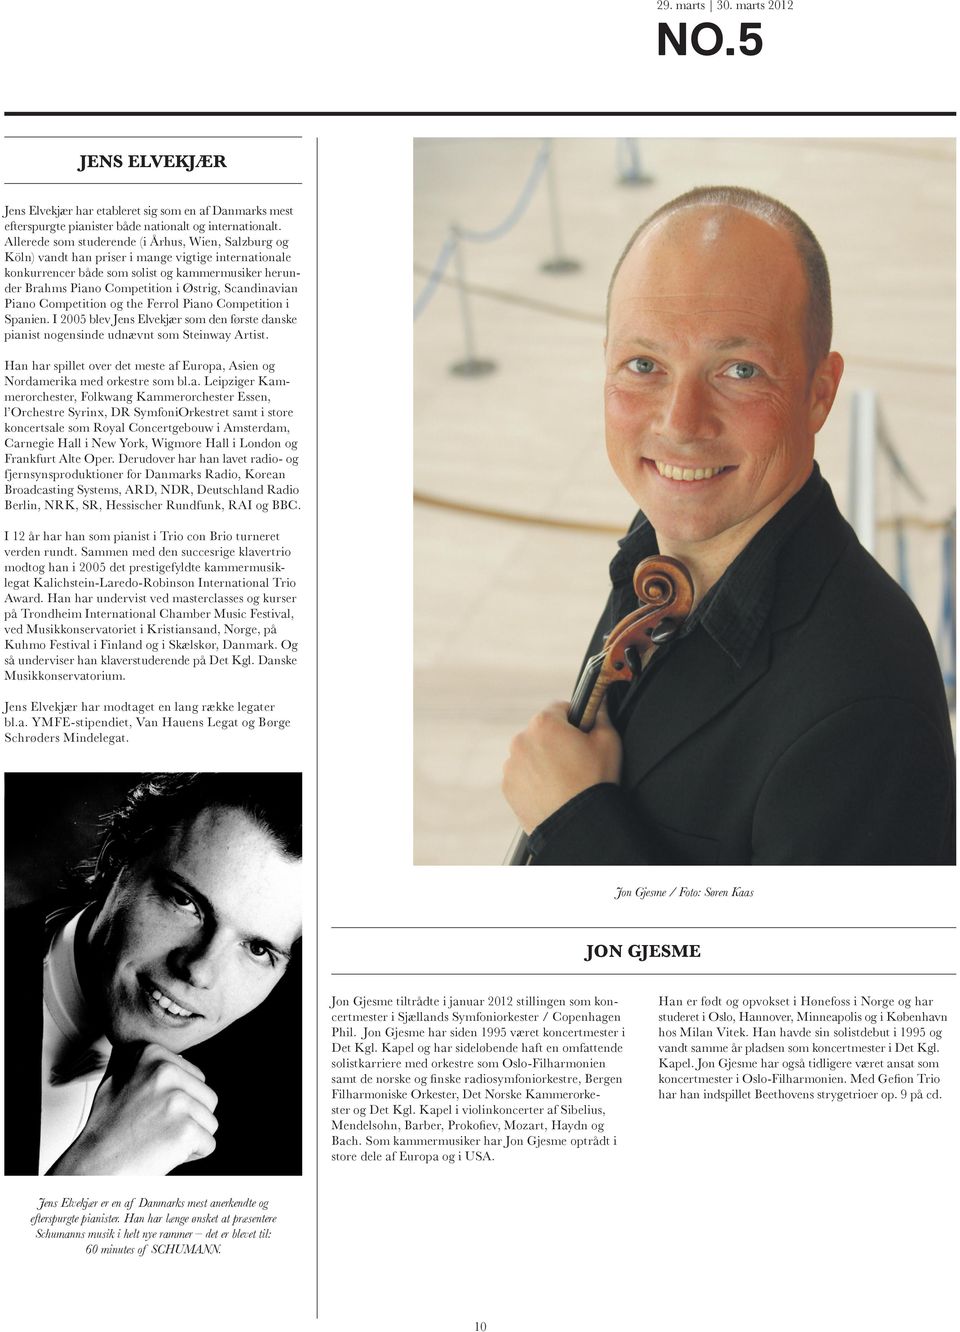 Scandinavian Spanien. I 2005 blev Jens Elvekjær som den første danske Han har spillet over det meste af Europa, Asien og Nordamerika med orkestre som bl.a. Leipziger Kam- l Orchestre Syrinx, DR